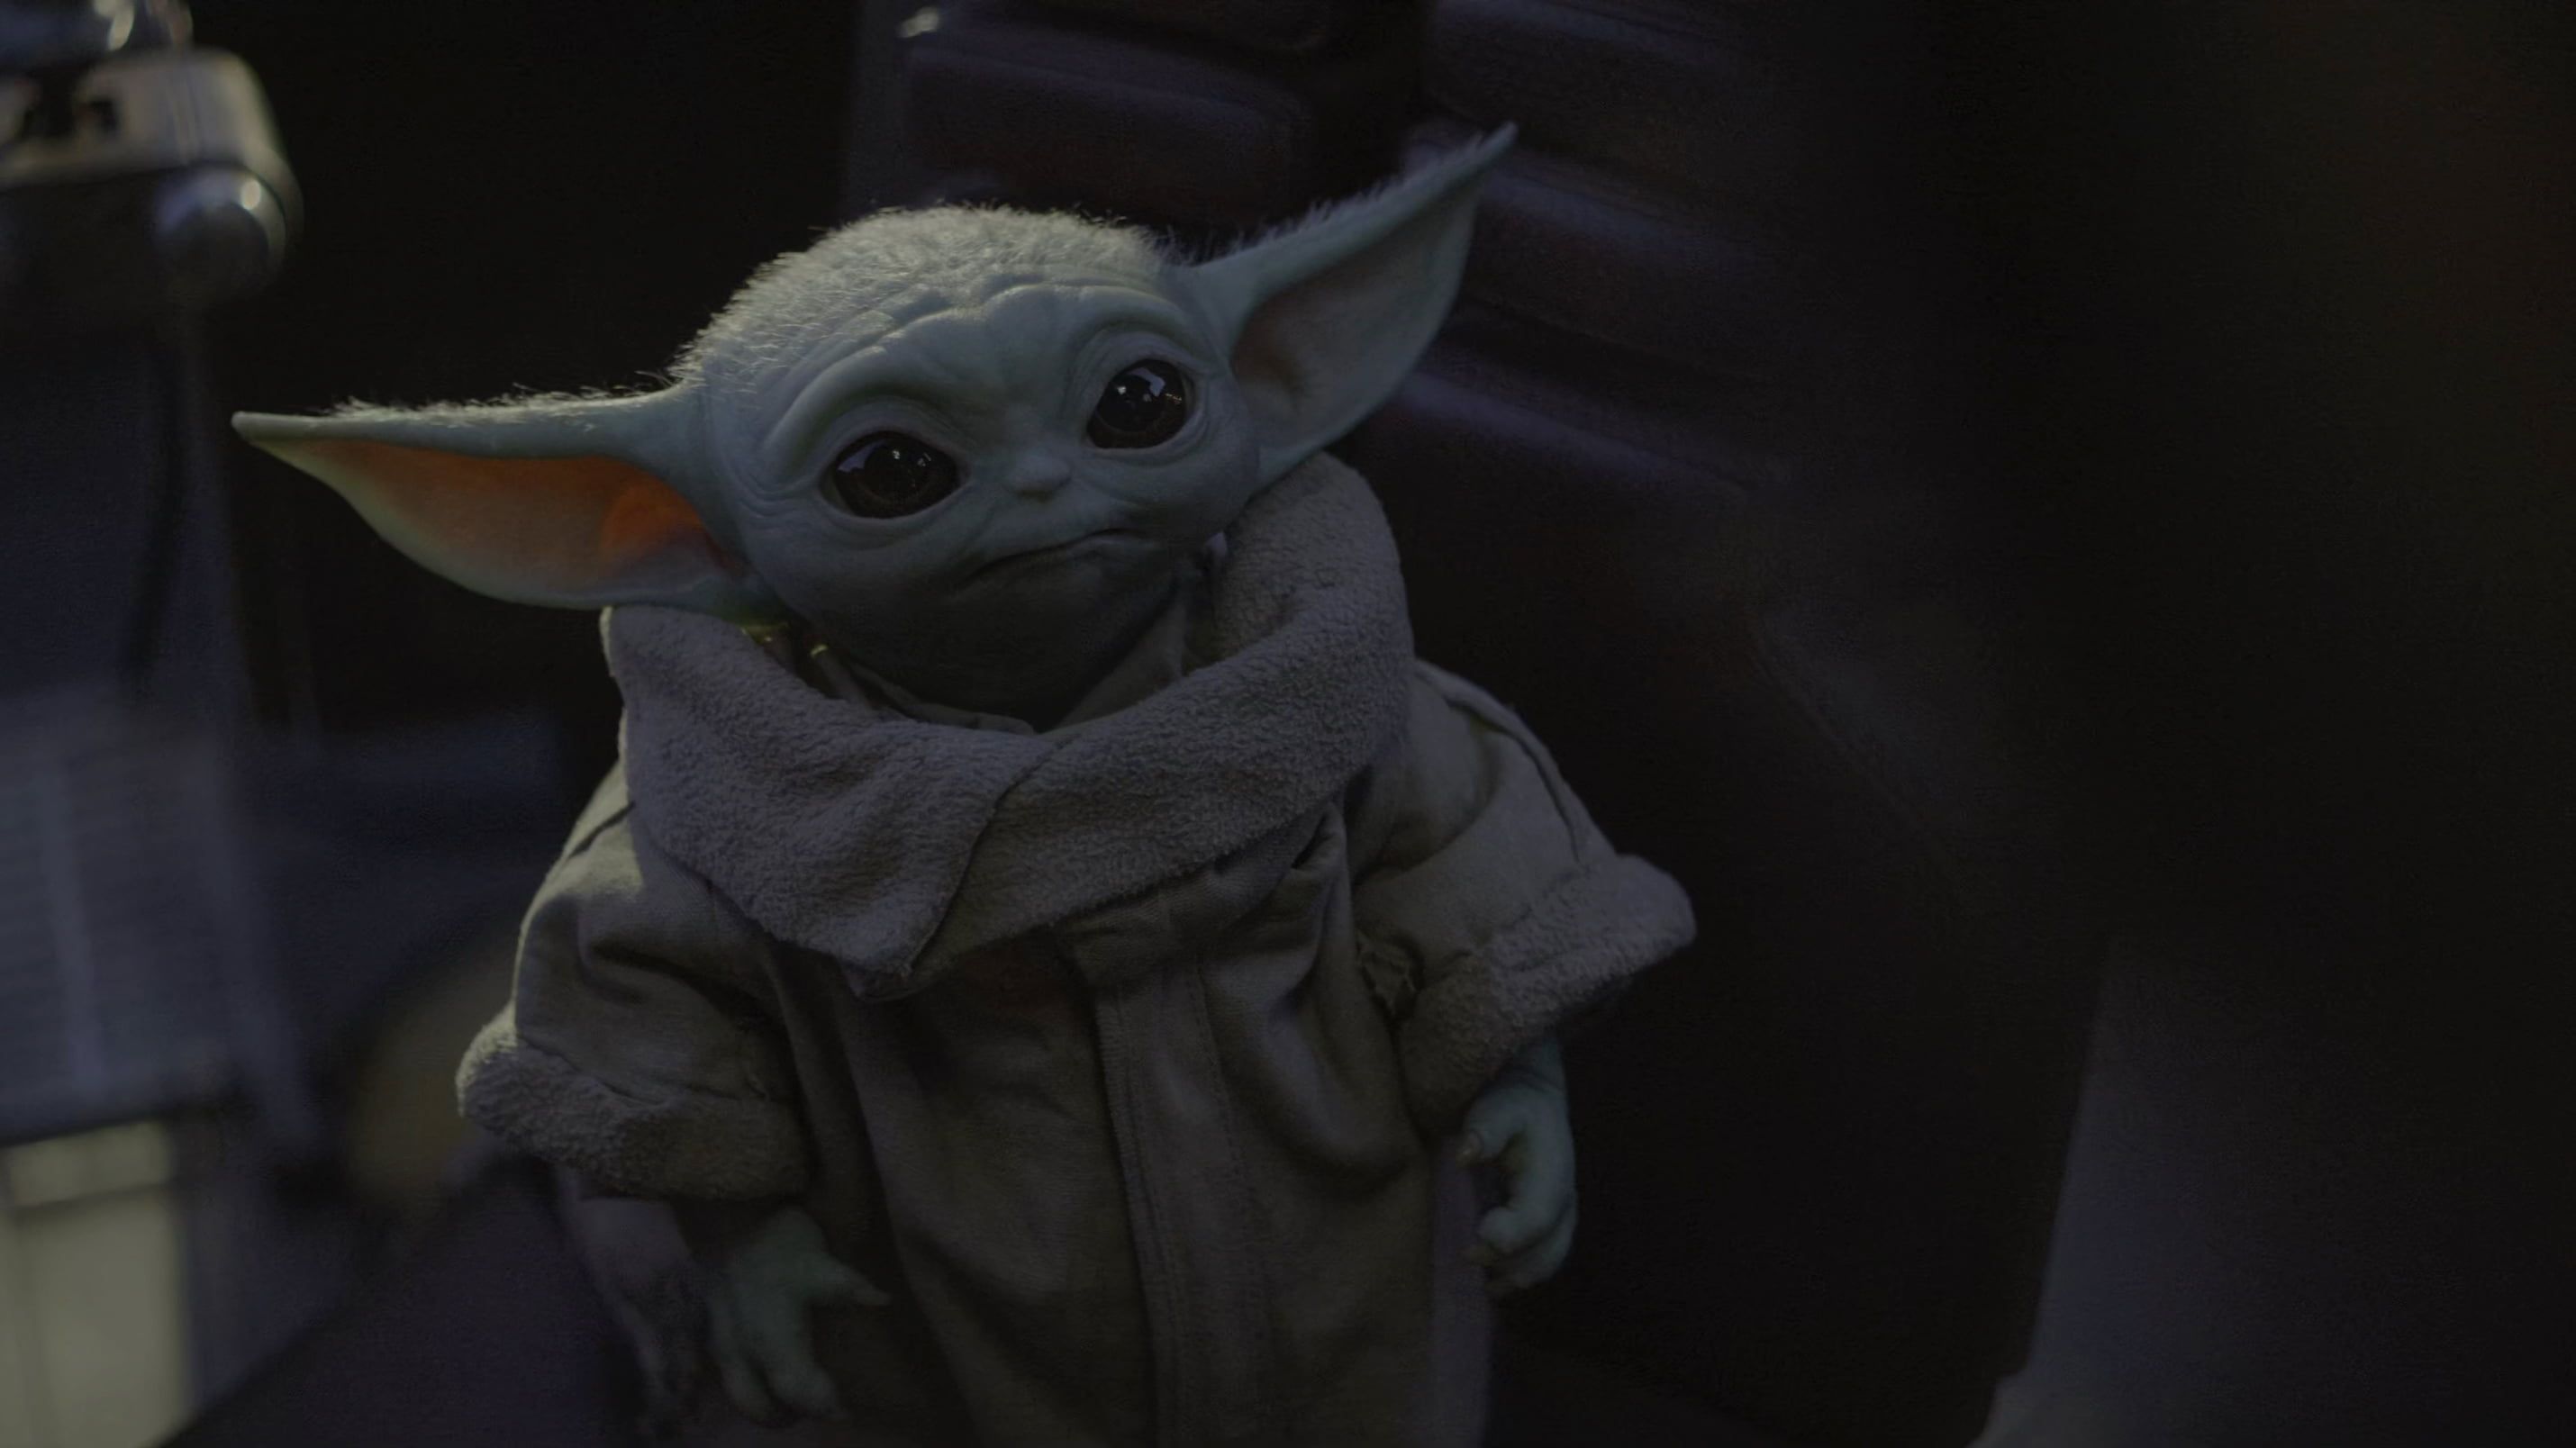 Cute Baby Yoda From Mandalorian Wallpapers